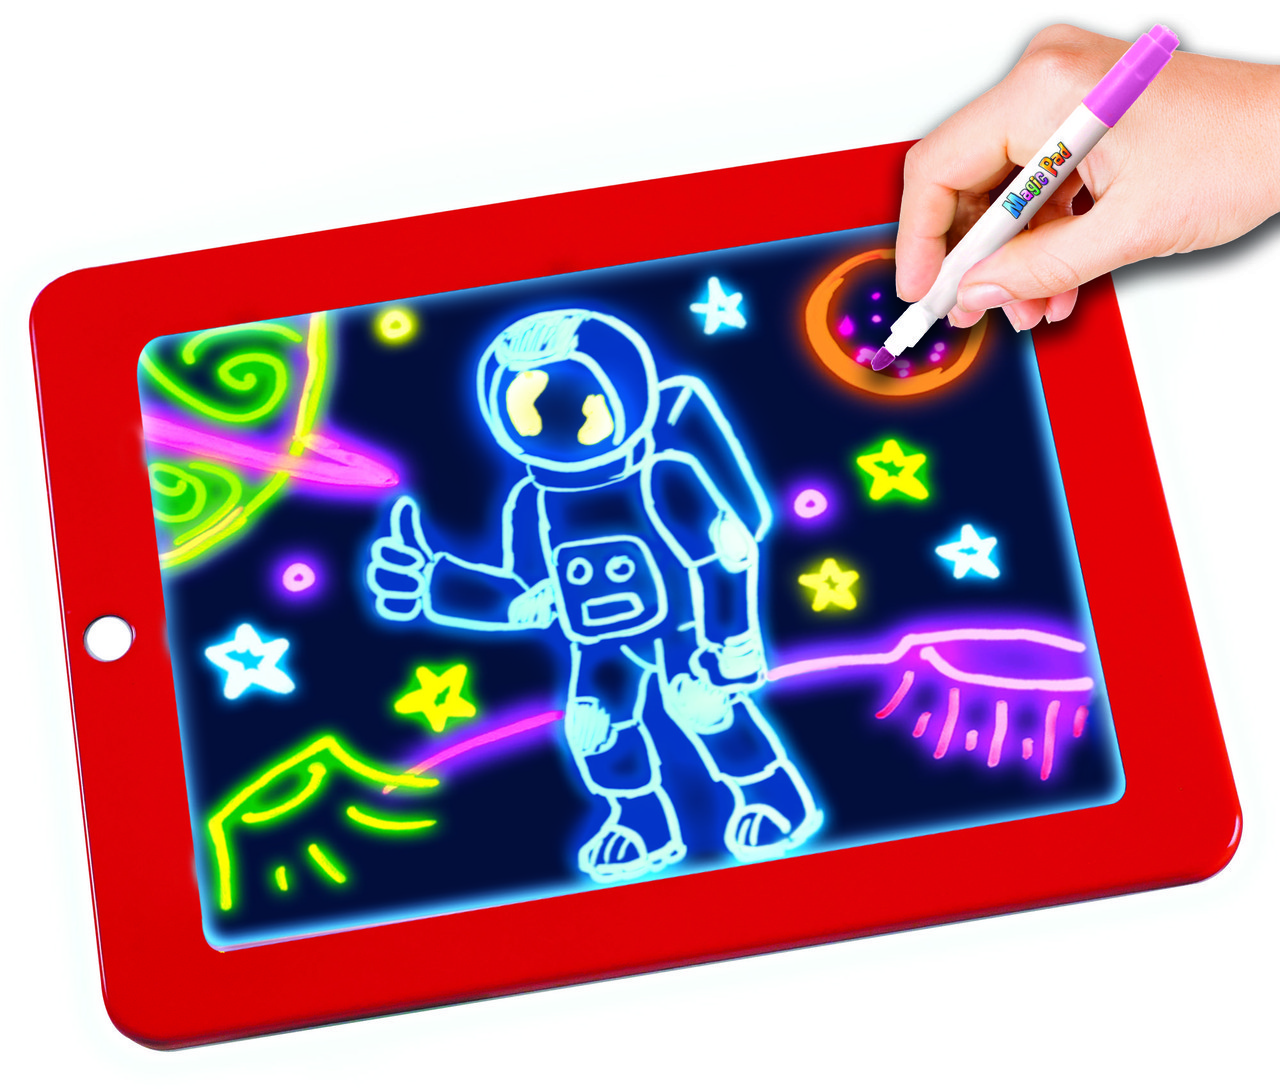 Дитячий планшет для малювання з підсвічуванням Magic Pad Deluxe YU227